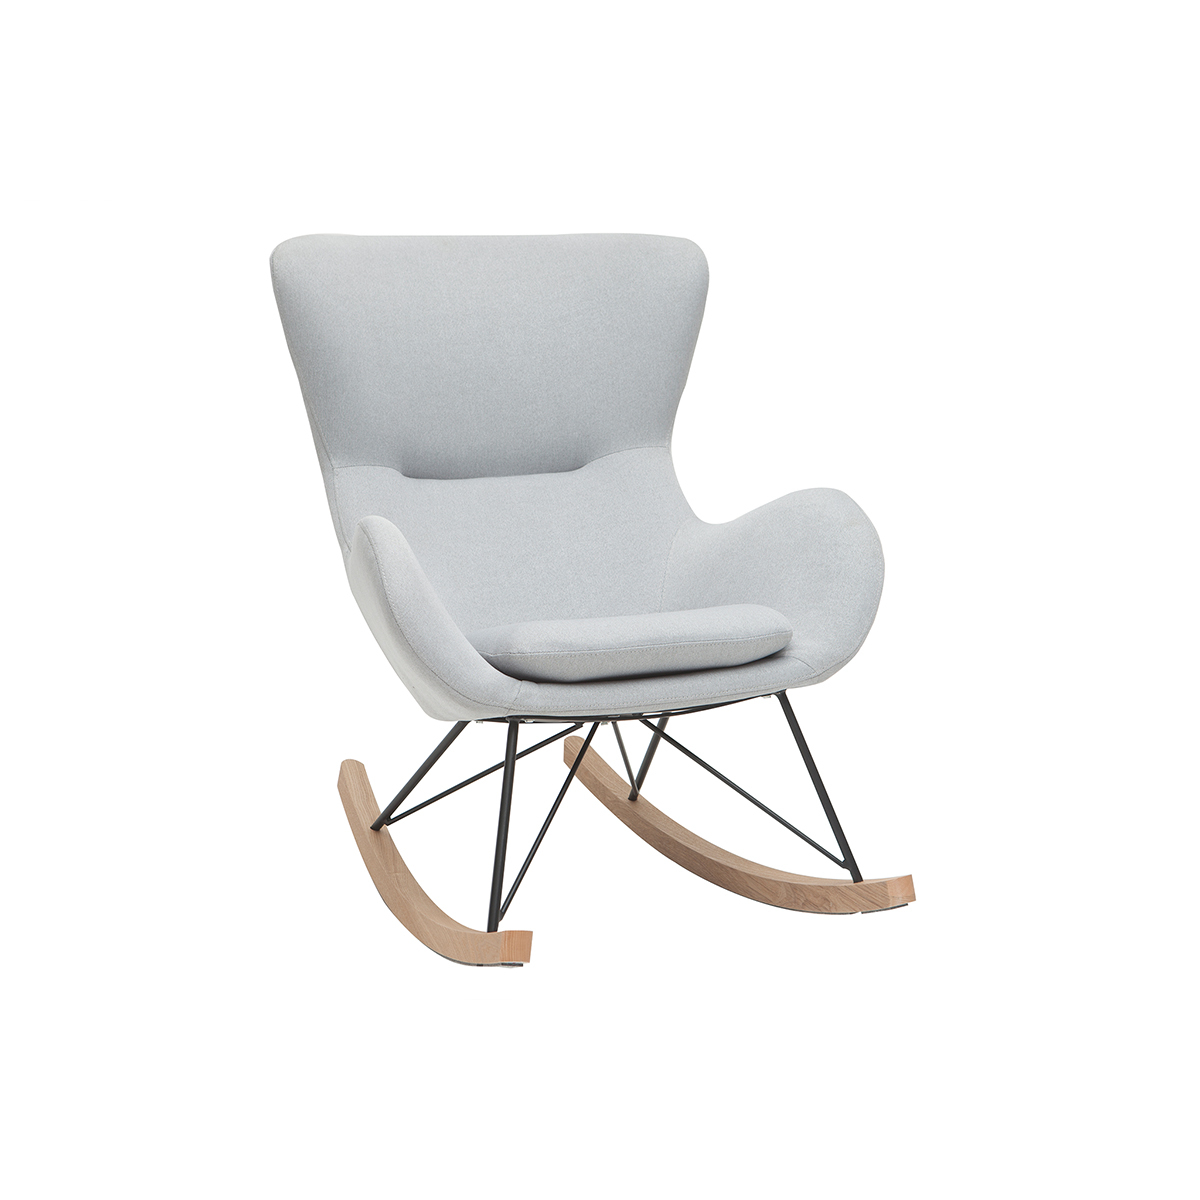 Rocking chair scandinave en tissu gris clair, métal noir et bois clair ESKUA vue1